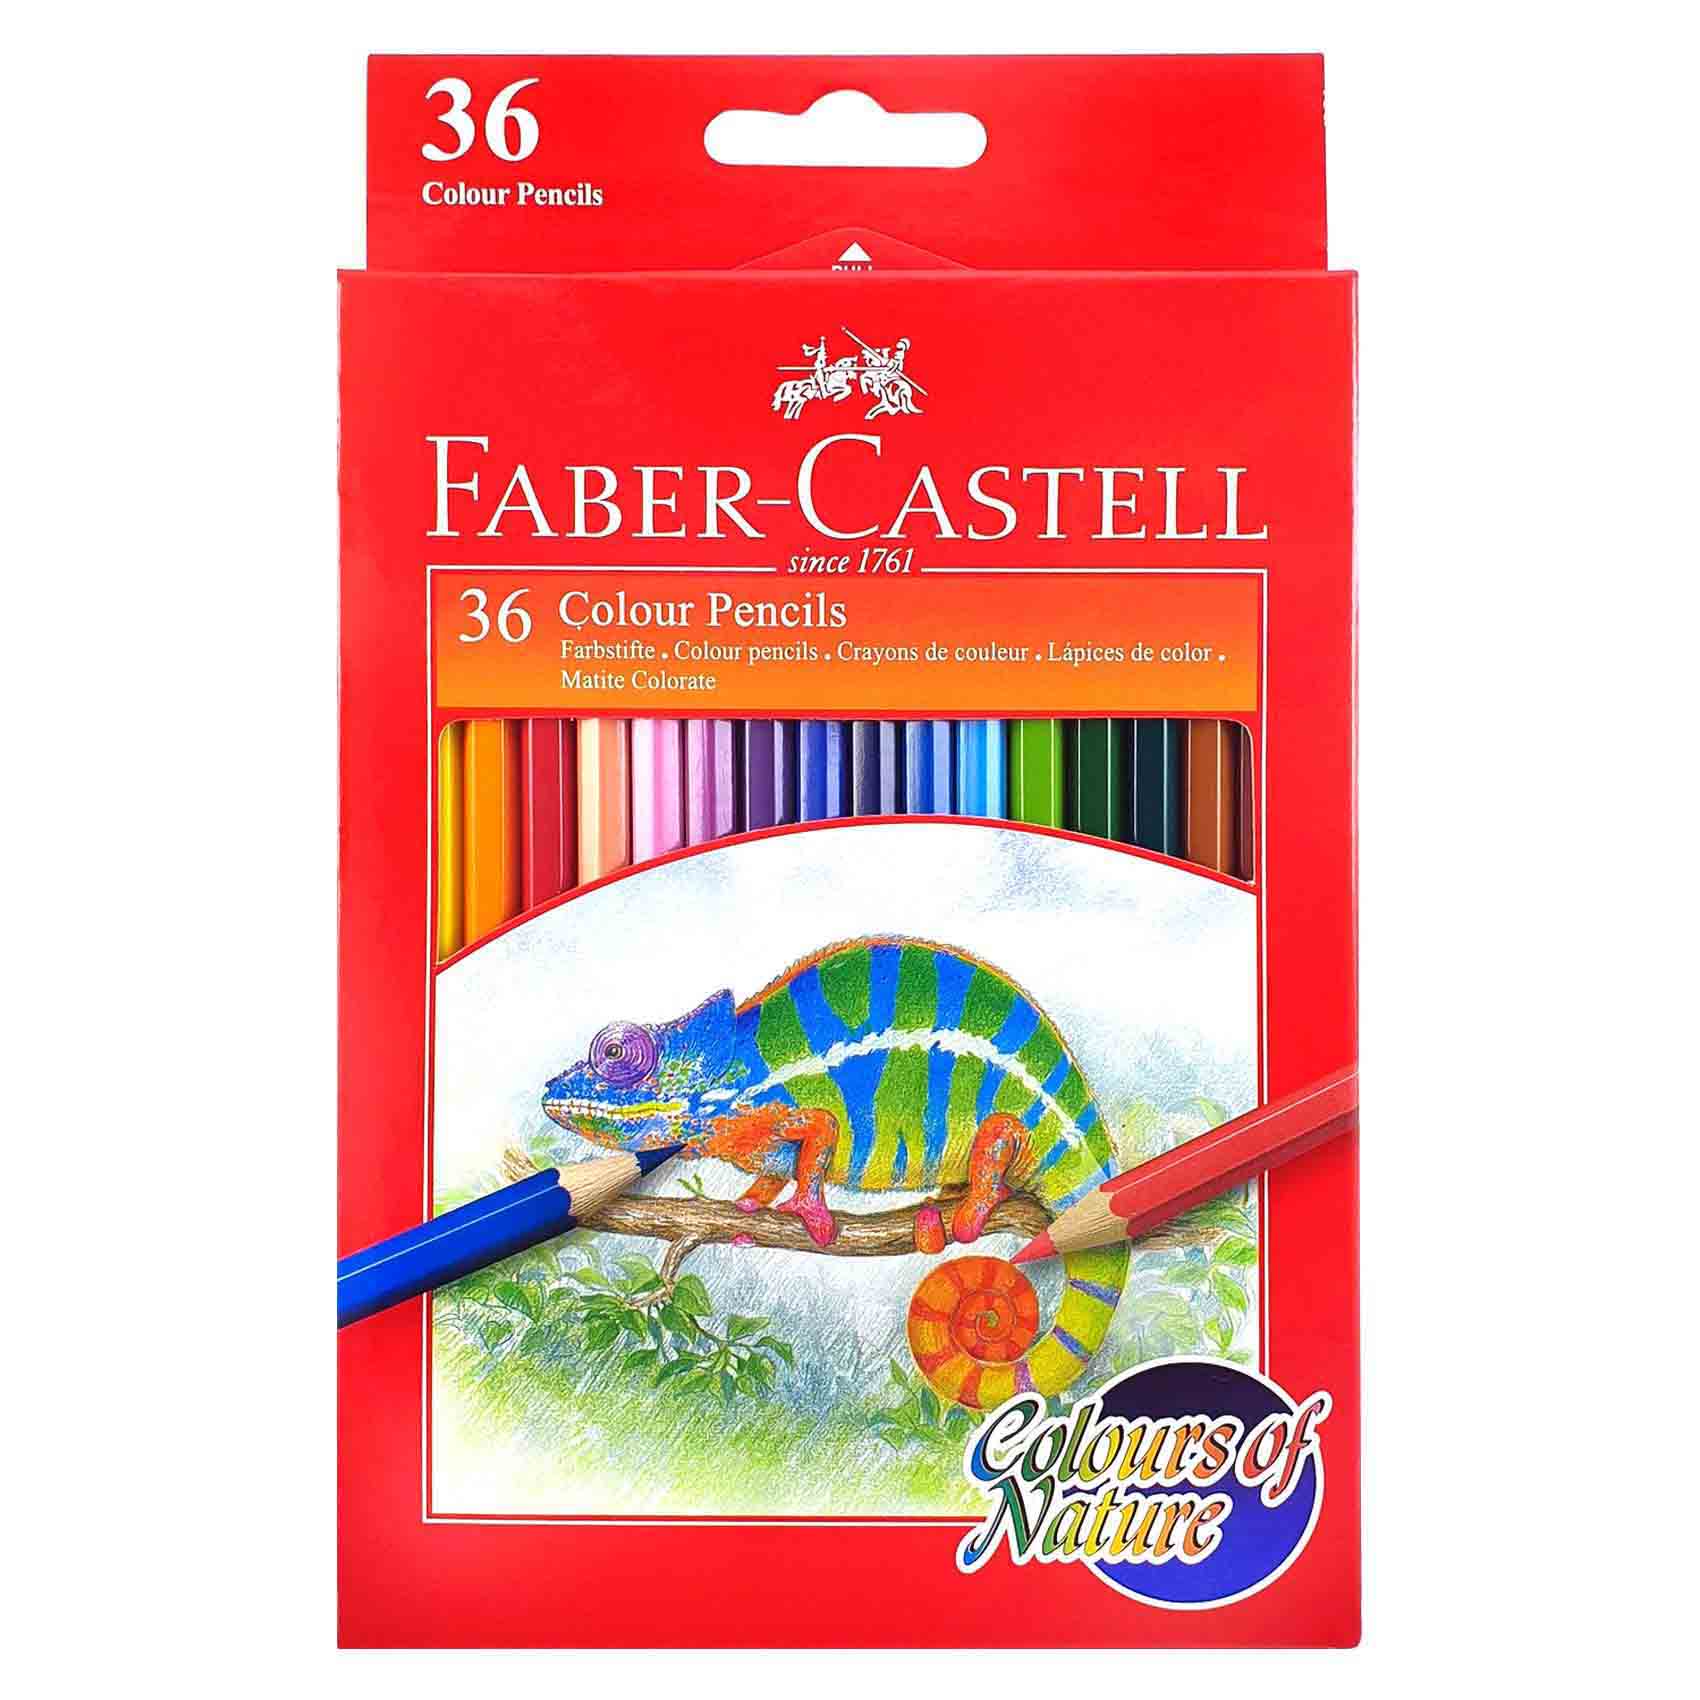 فابر كاستال  أقلام تلوين ذات ألوان طبيعية، حزمة من 36 قلمًا - متعدد الألوان.